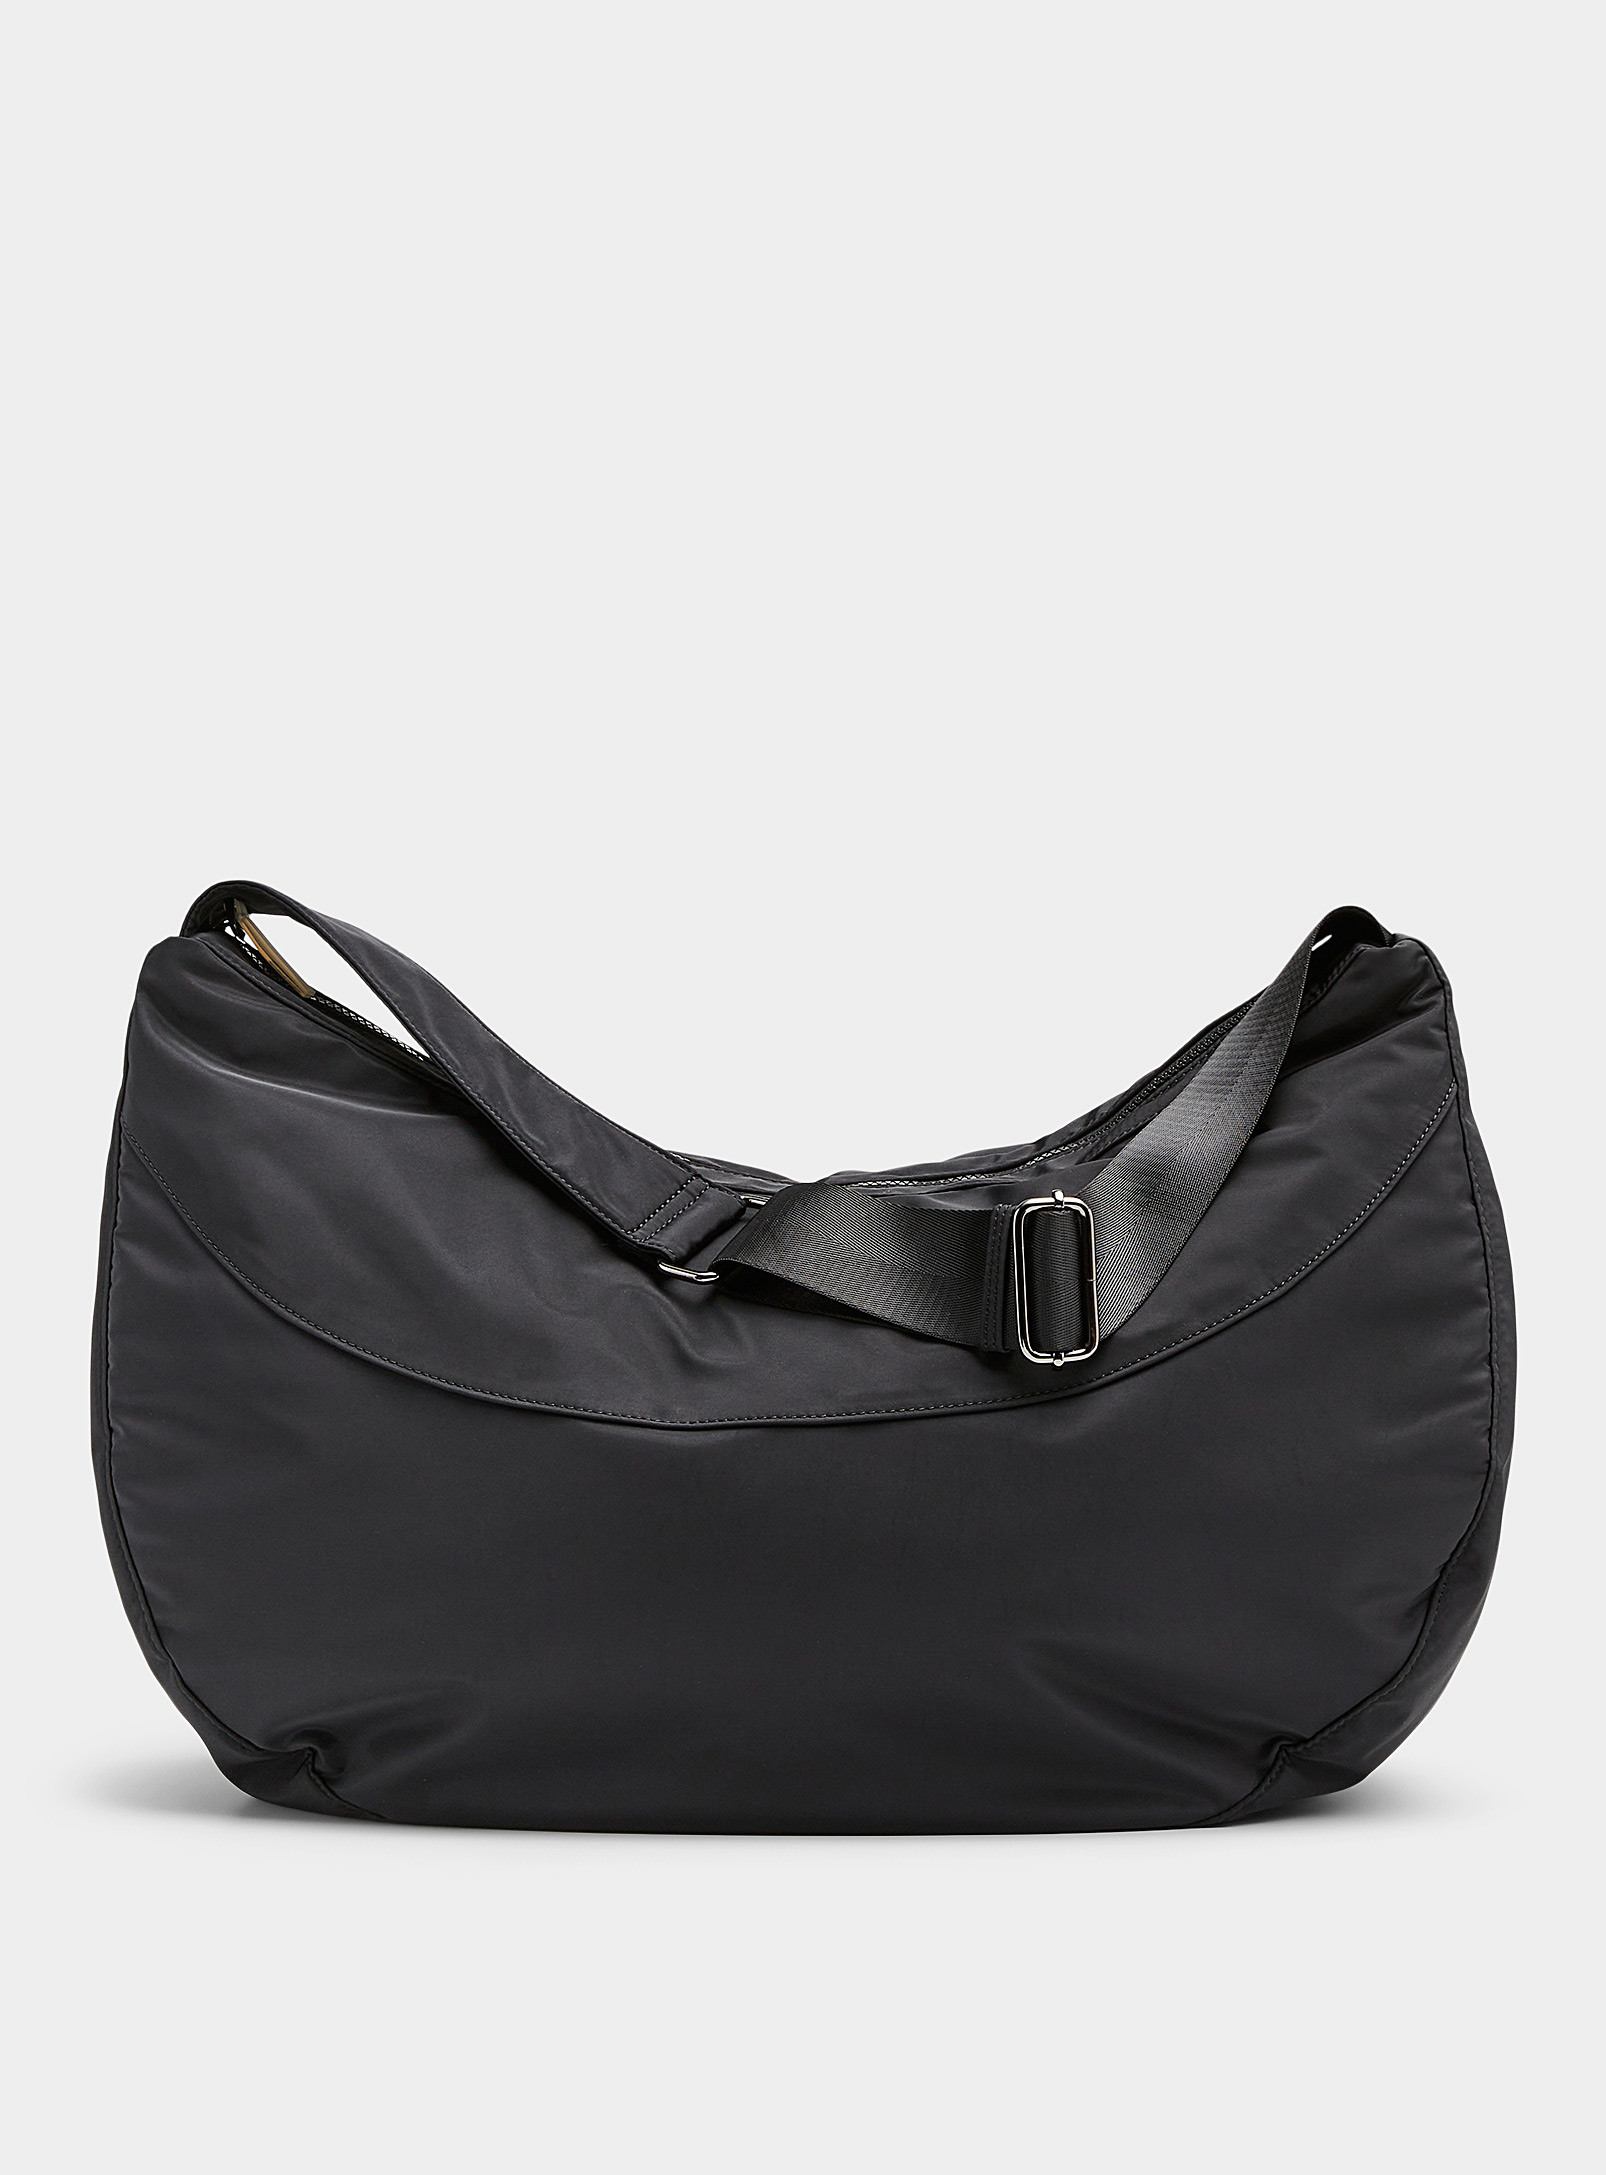 HVISK - Women's Edna oversized saddle bag